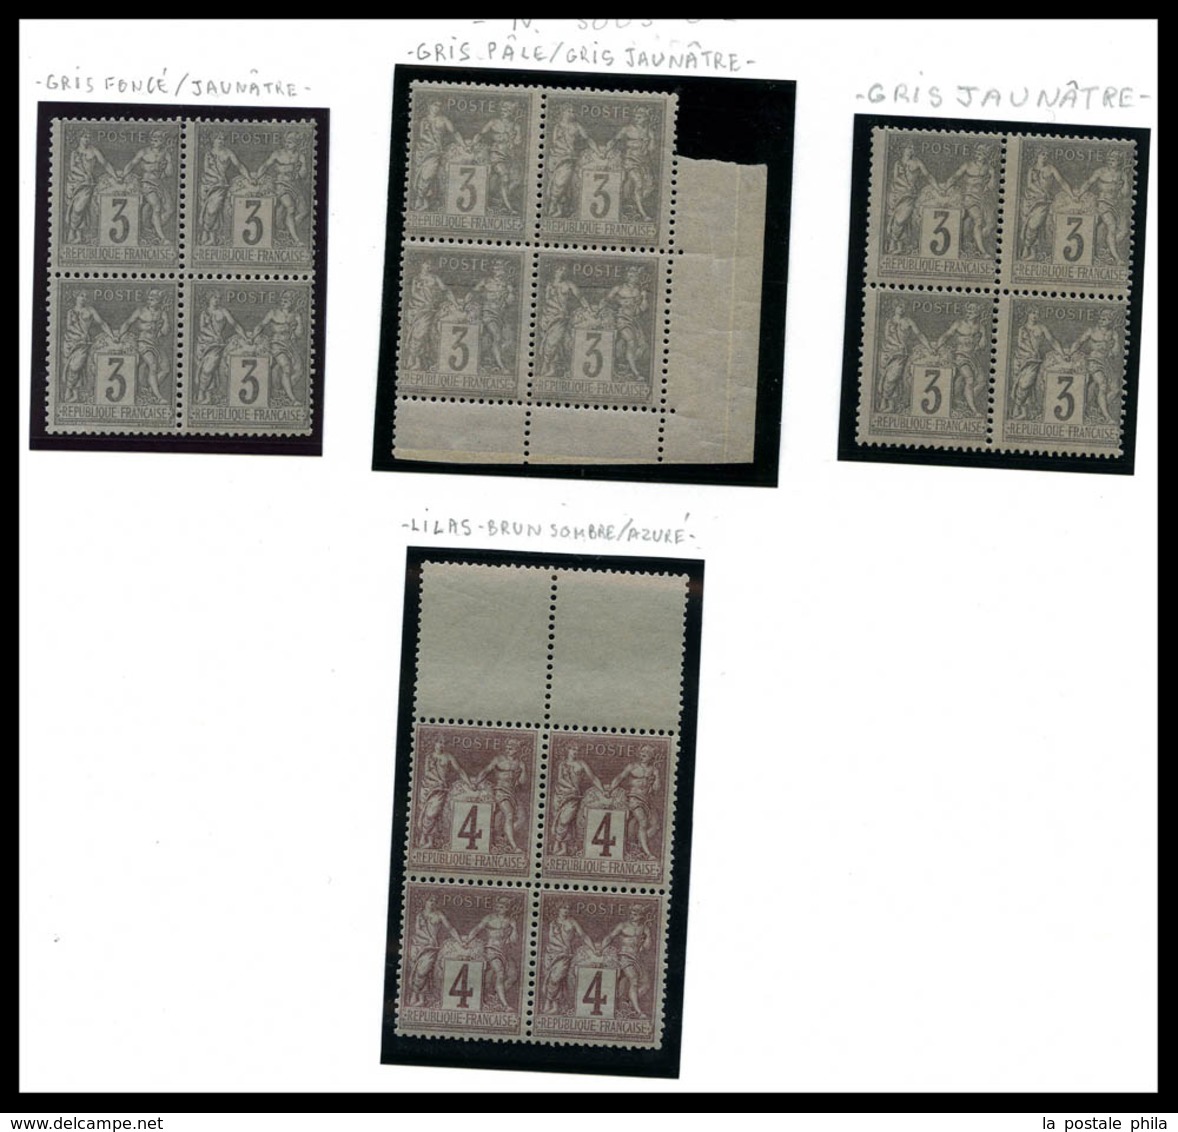 N 1876-1900, Sage, bel ensemble de timbres neufs presenté sur pages d'album, de nombreux multiples, forte cote, qualité